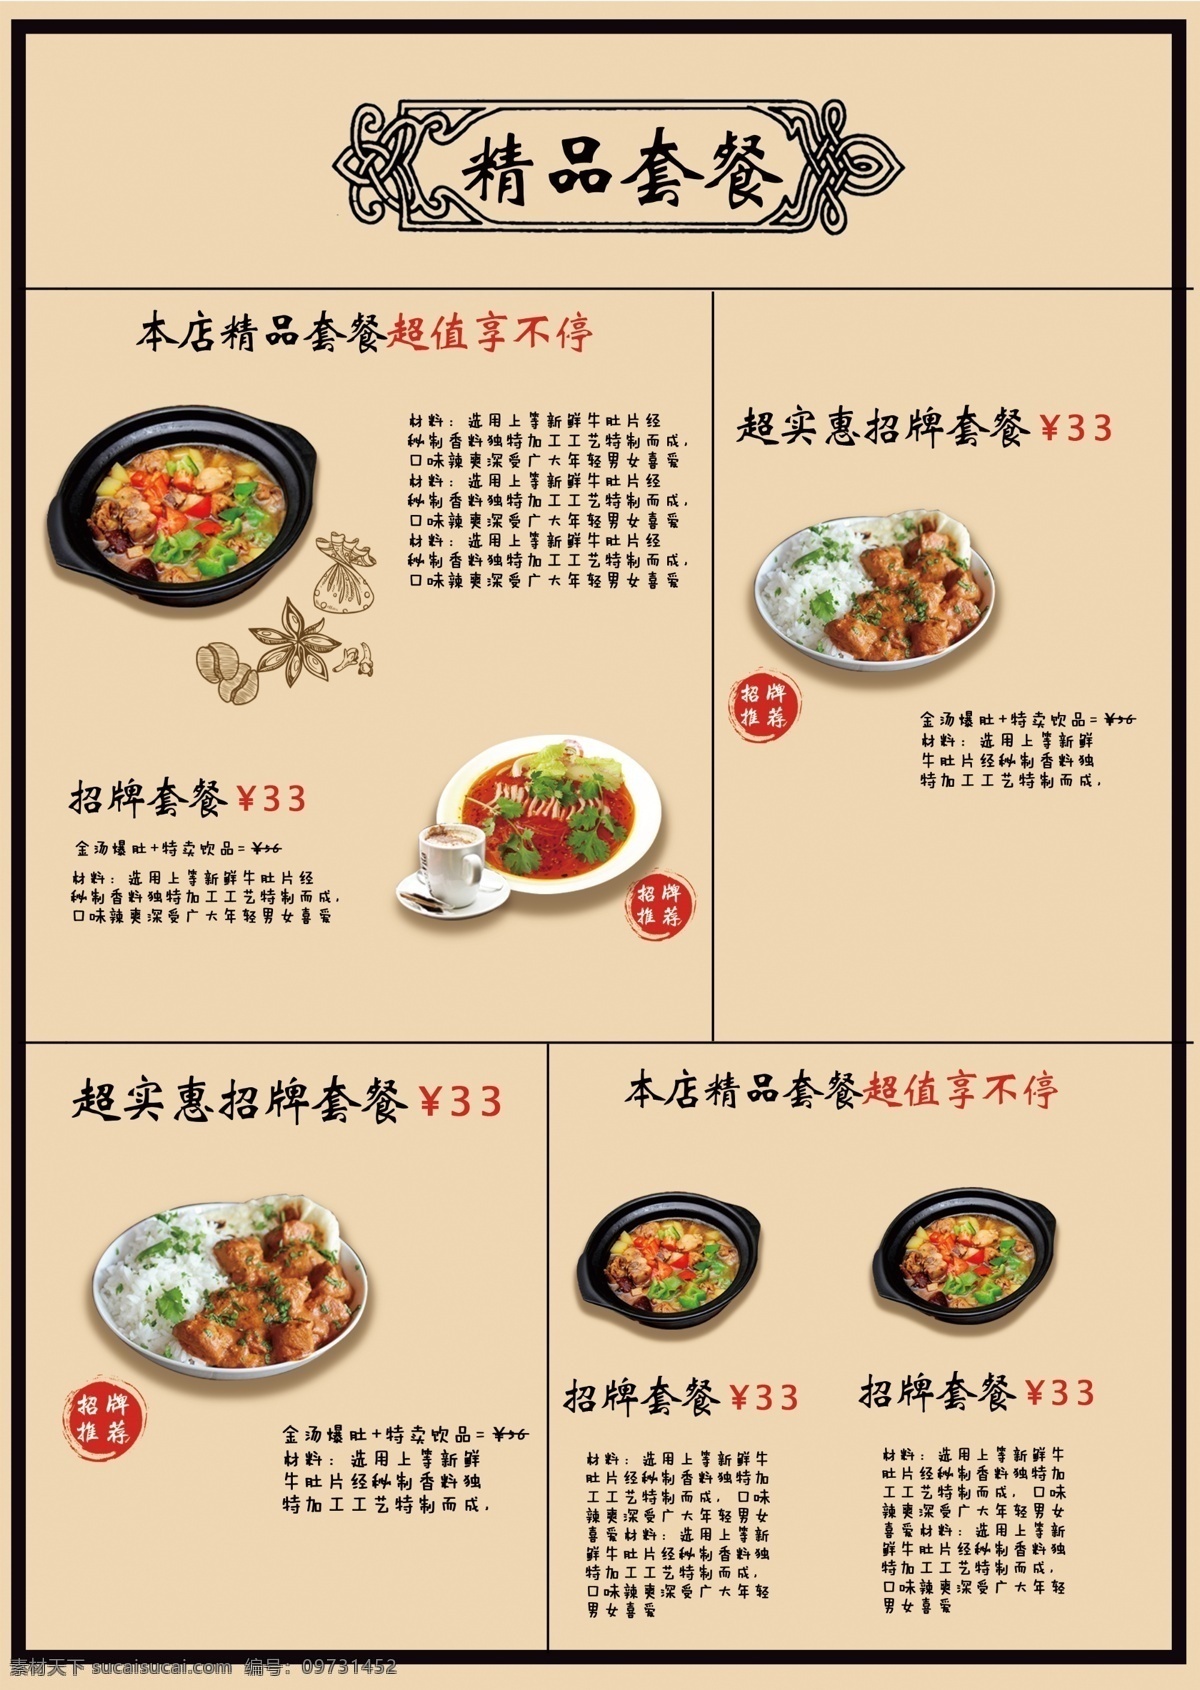 中餐厅 菜单 中餐厅菜单 高档菜单 时尚菜单 中式菜单 中餐菜单 中国风菜单 菜单菜谱